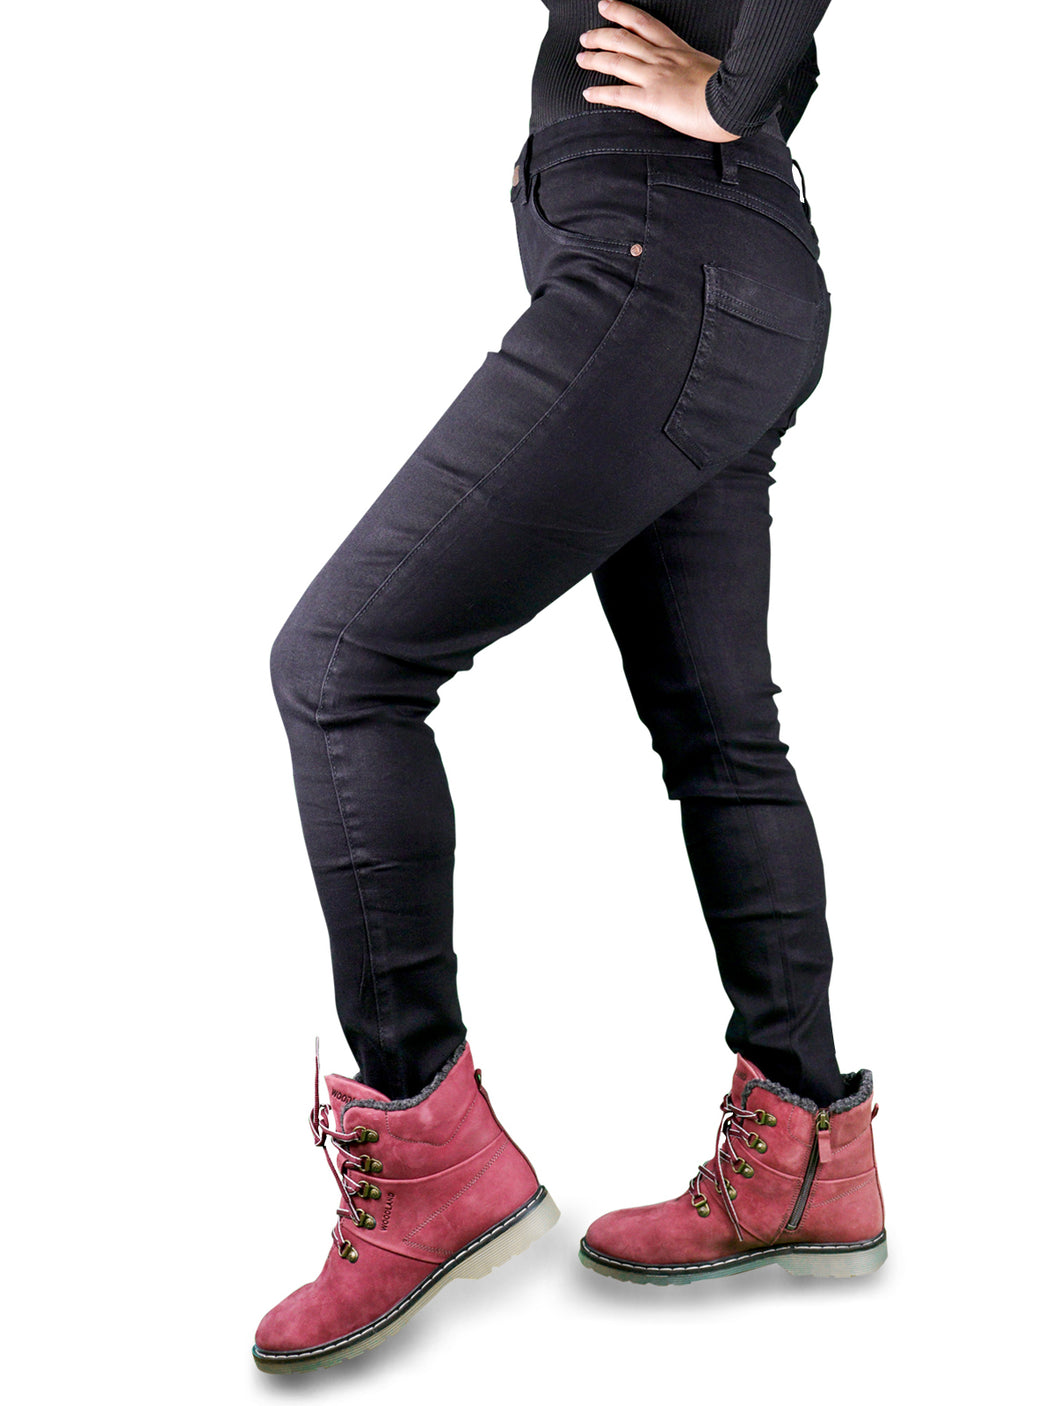 Outfmvch leggings for women Denim Jeans Look Like Leggings Stretchy High  Waist Slim Skinny Jeggings pants for women cargo pants